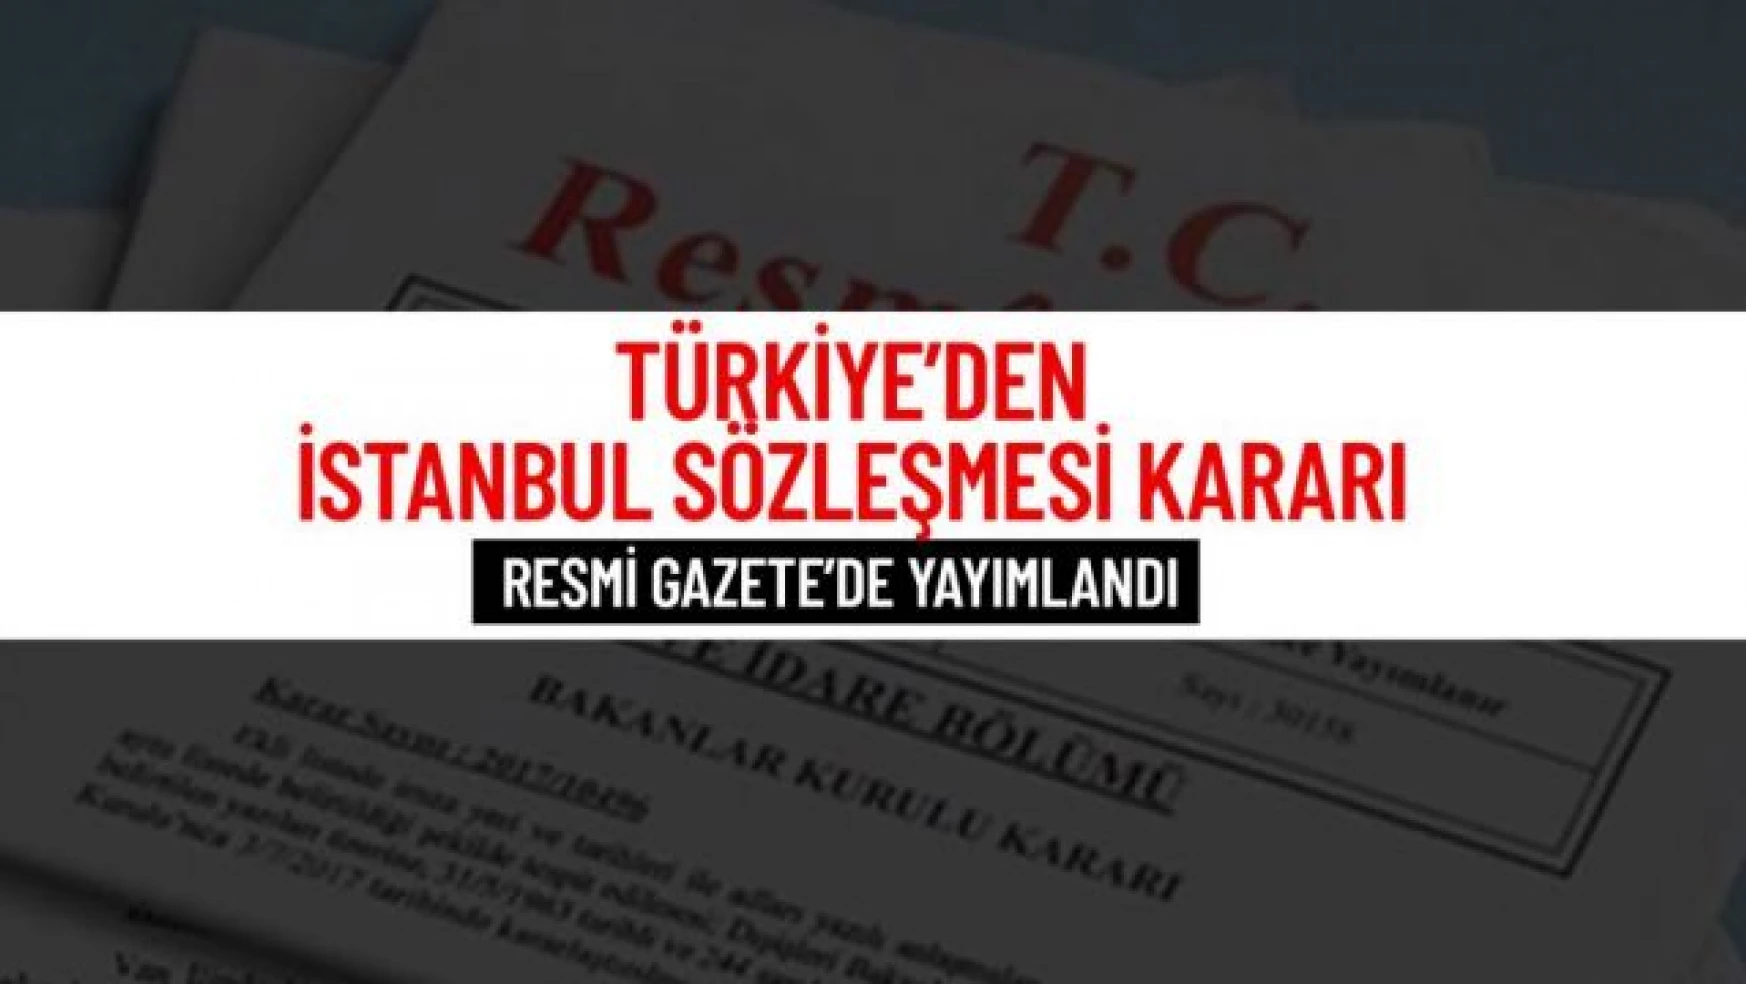 Türkiye, İstanbul Sözleşmesi'nden çekildi